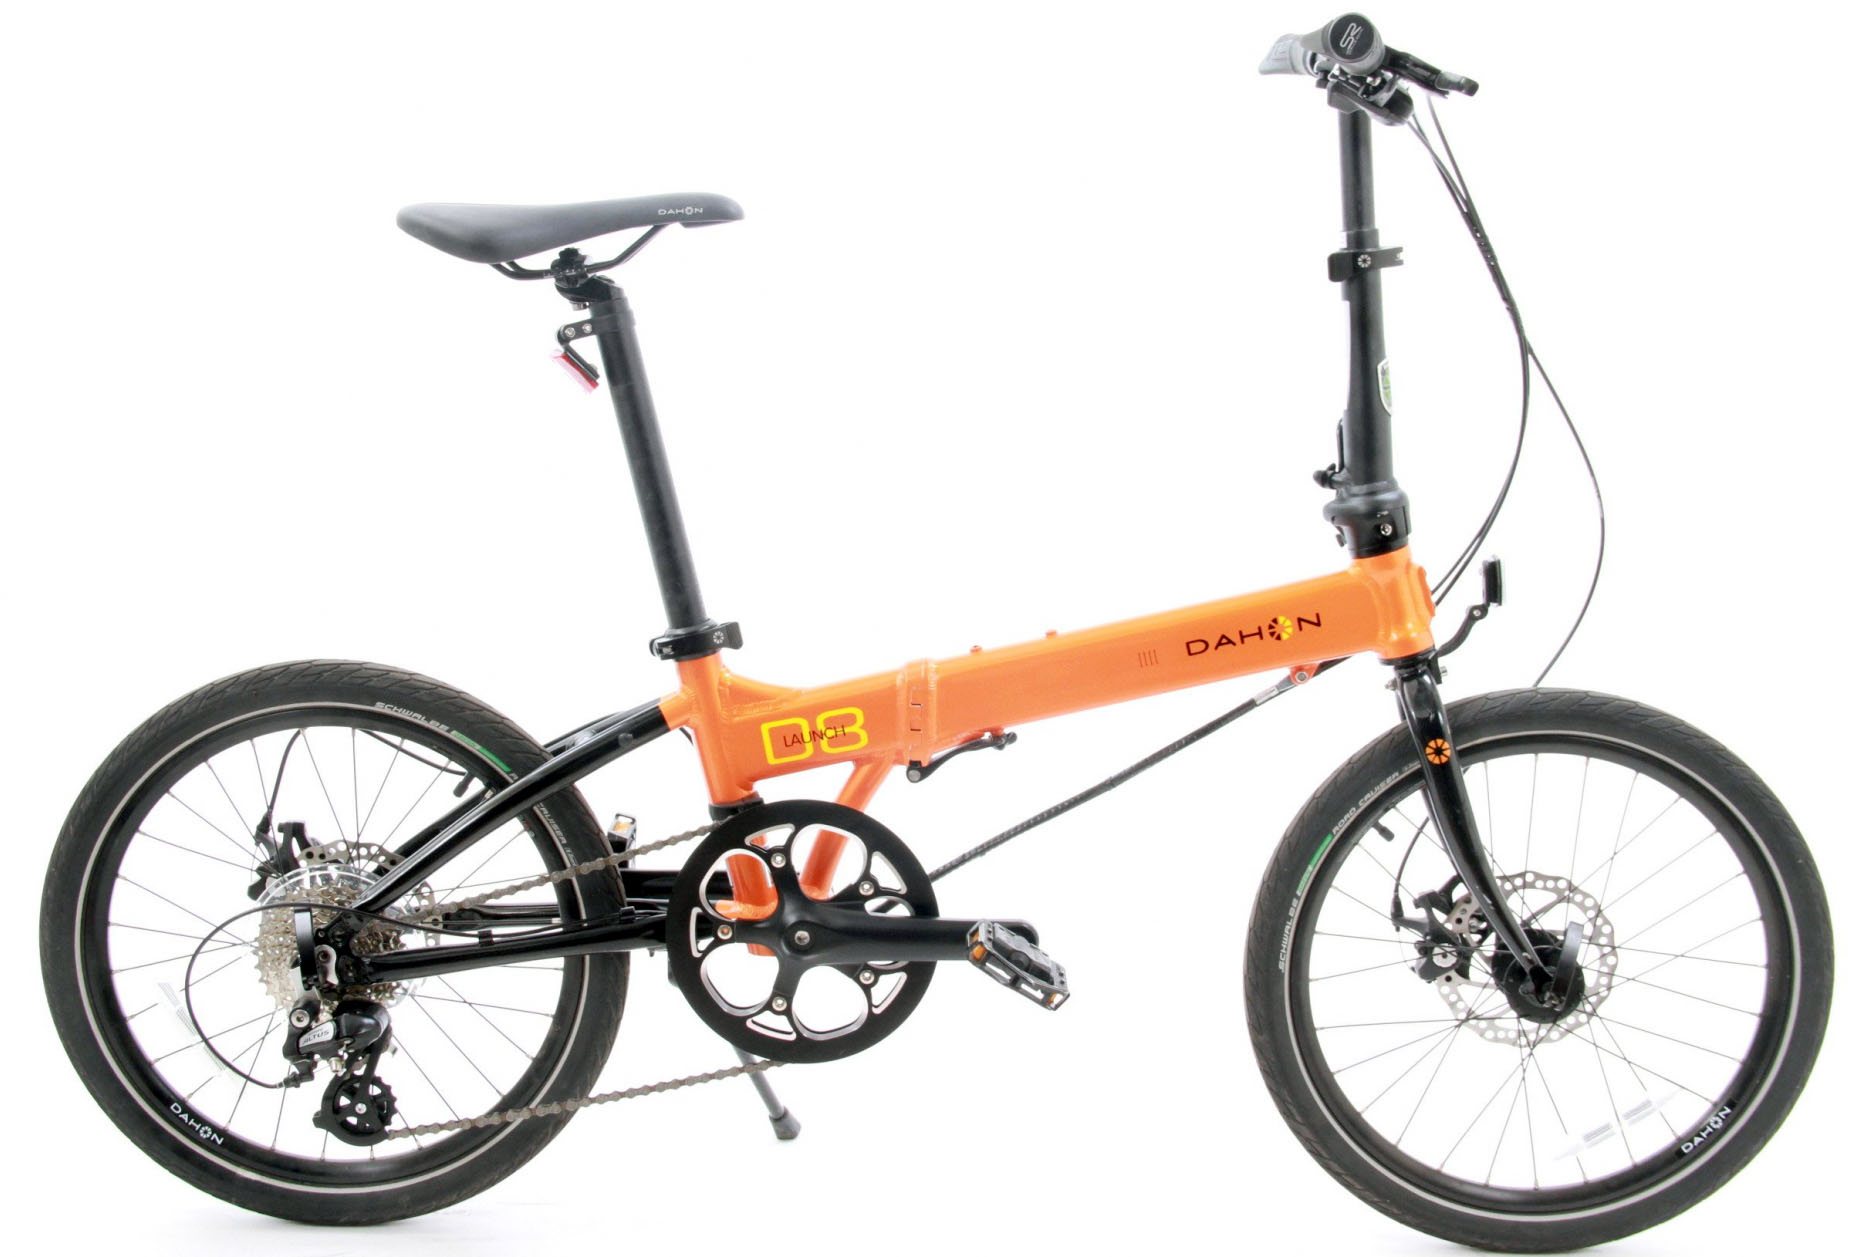  Отзывы о Складном велосипеде Dahon Launch D8 2022